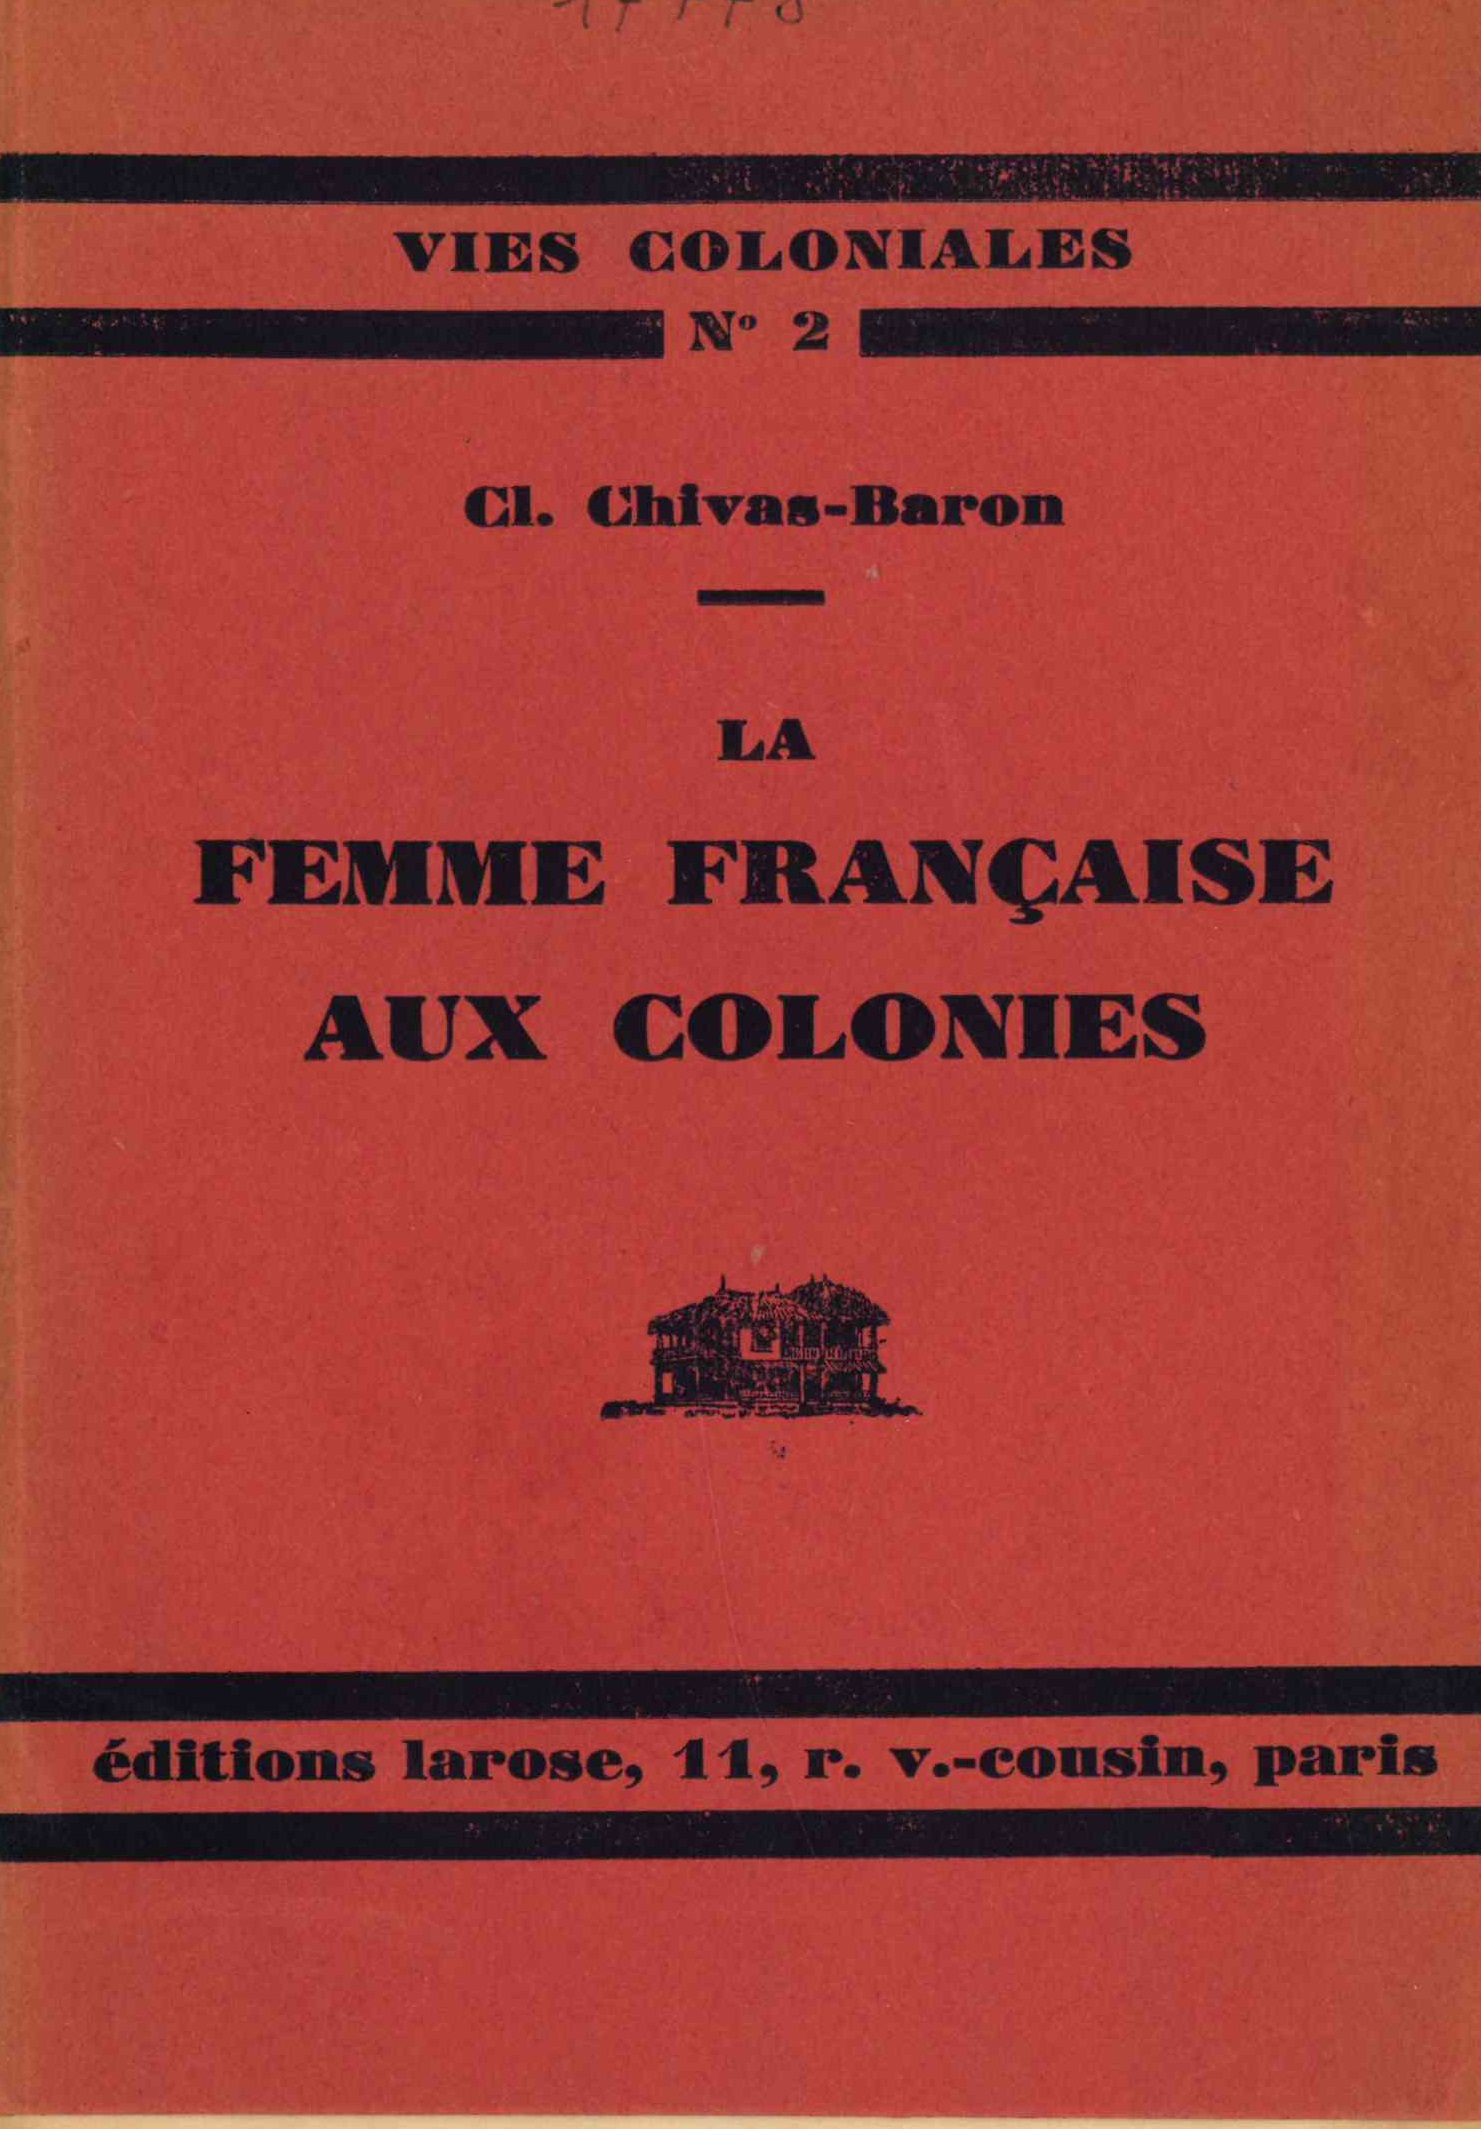 Chivas-Baron (Clotilde), La femme française aux colonies, Paris, Larose, 1929